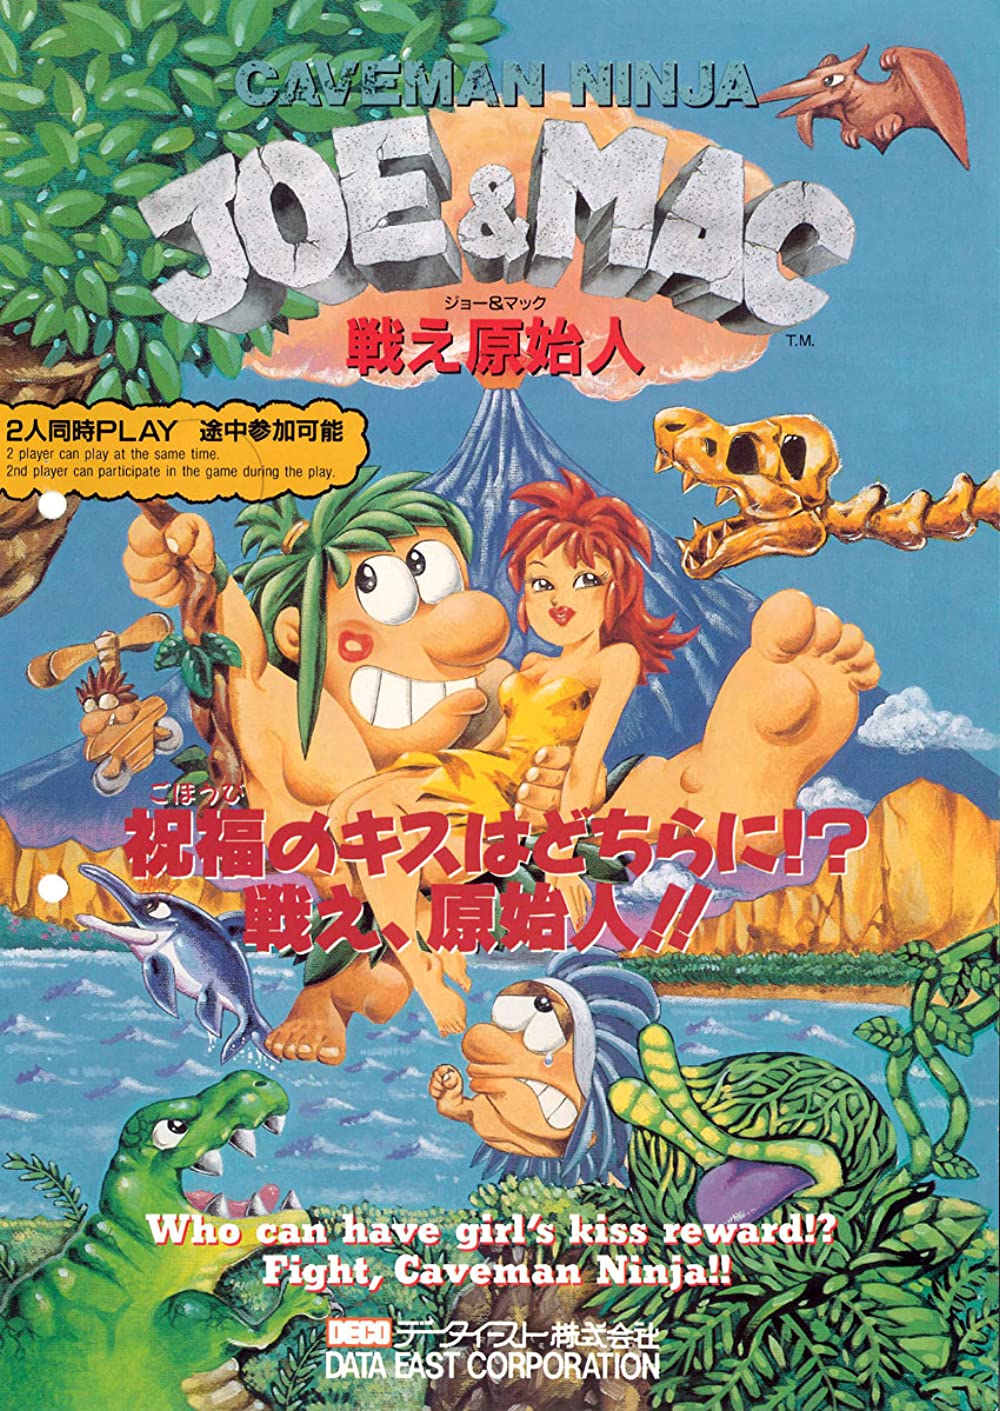 jaquette du jeu vidéo Joe & Mac : Caveman Ninja